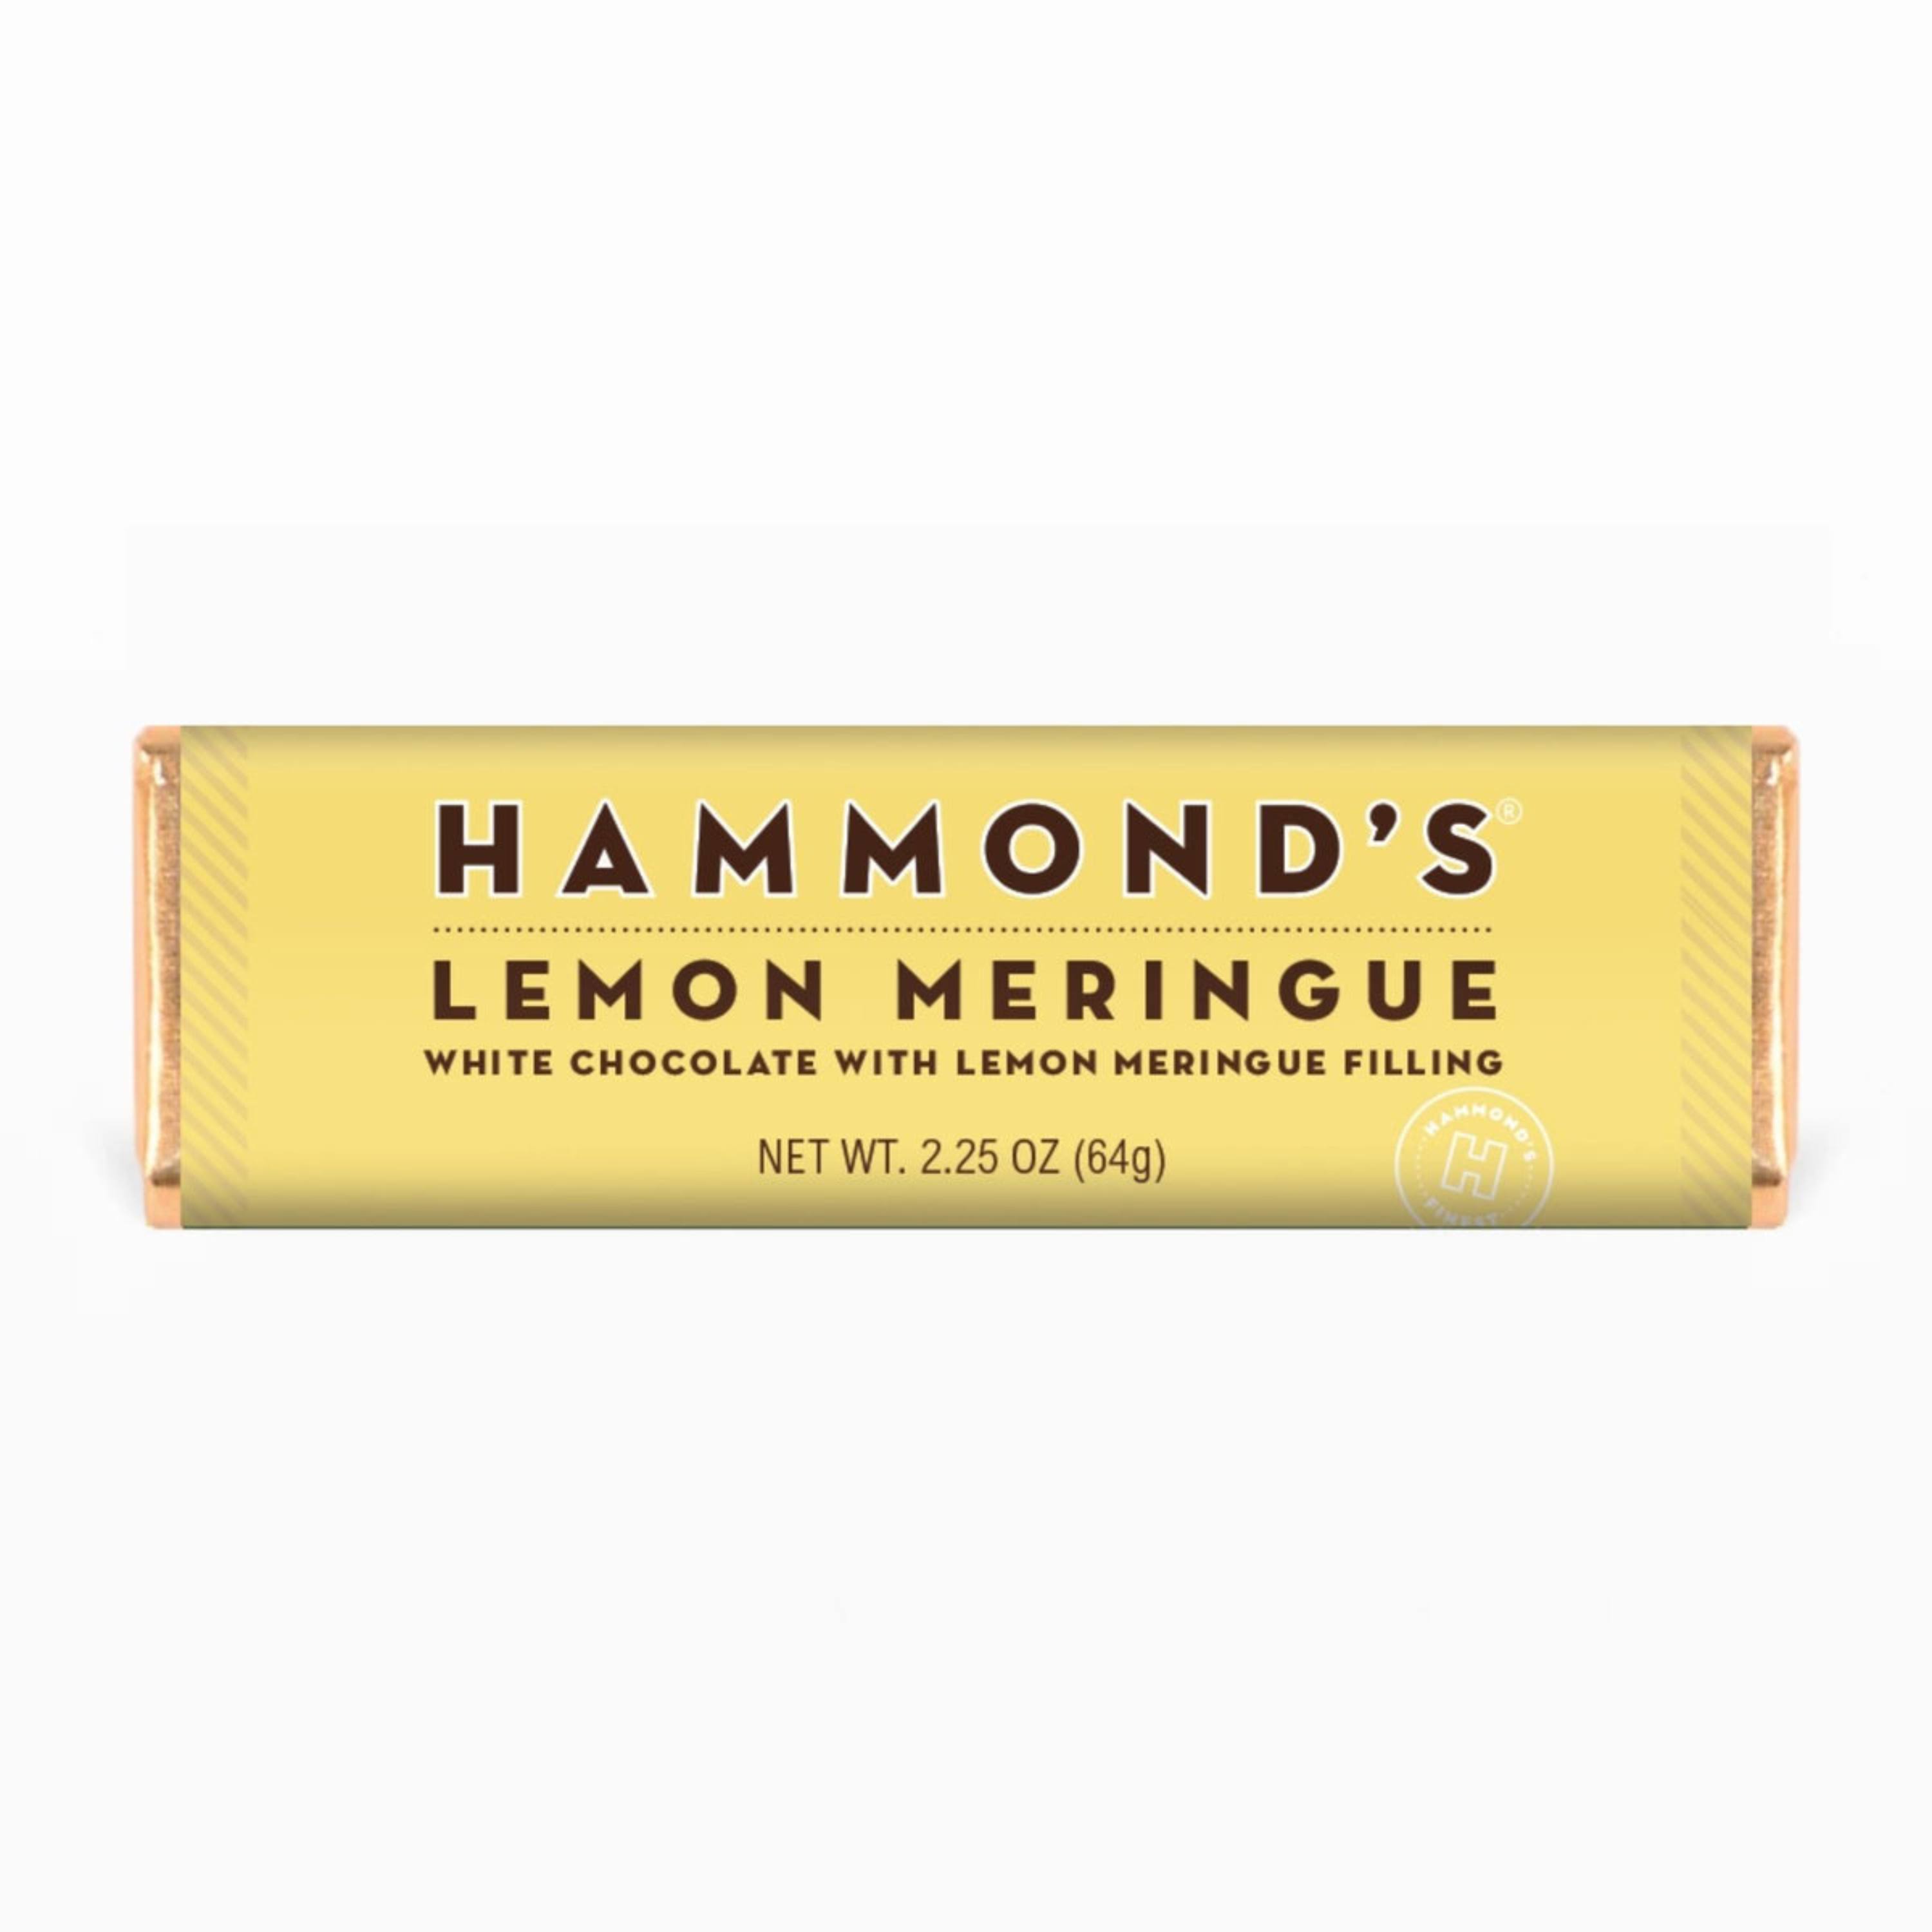 Hammond’s Chocolate Bars Lemon Meringue White Chocolate